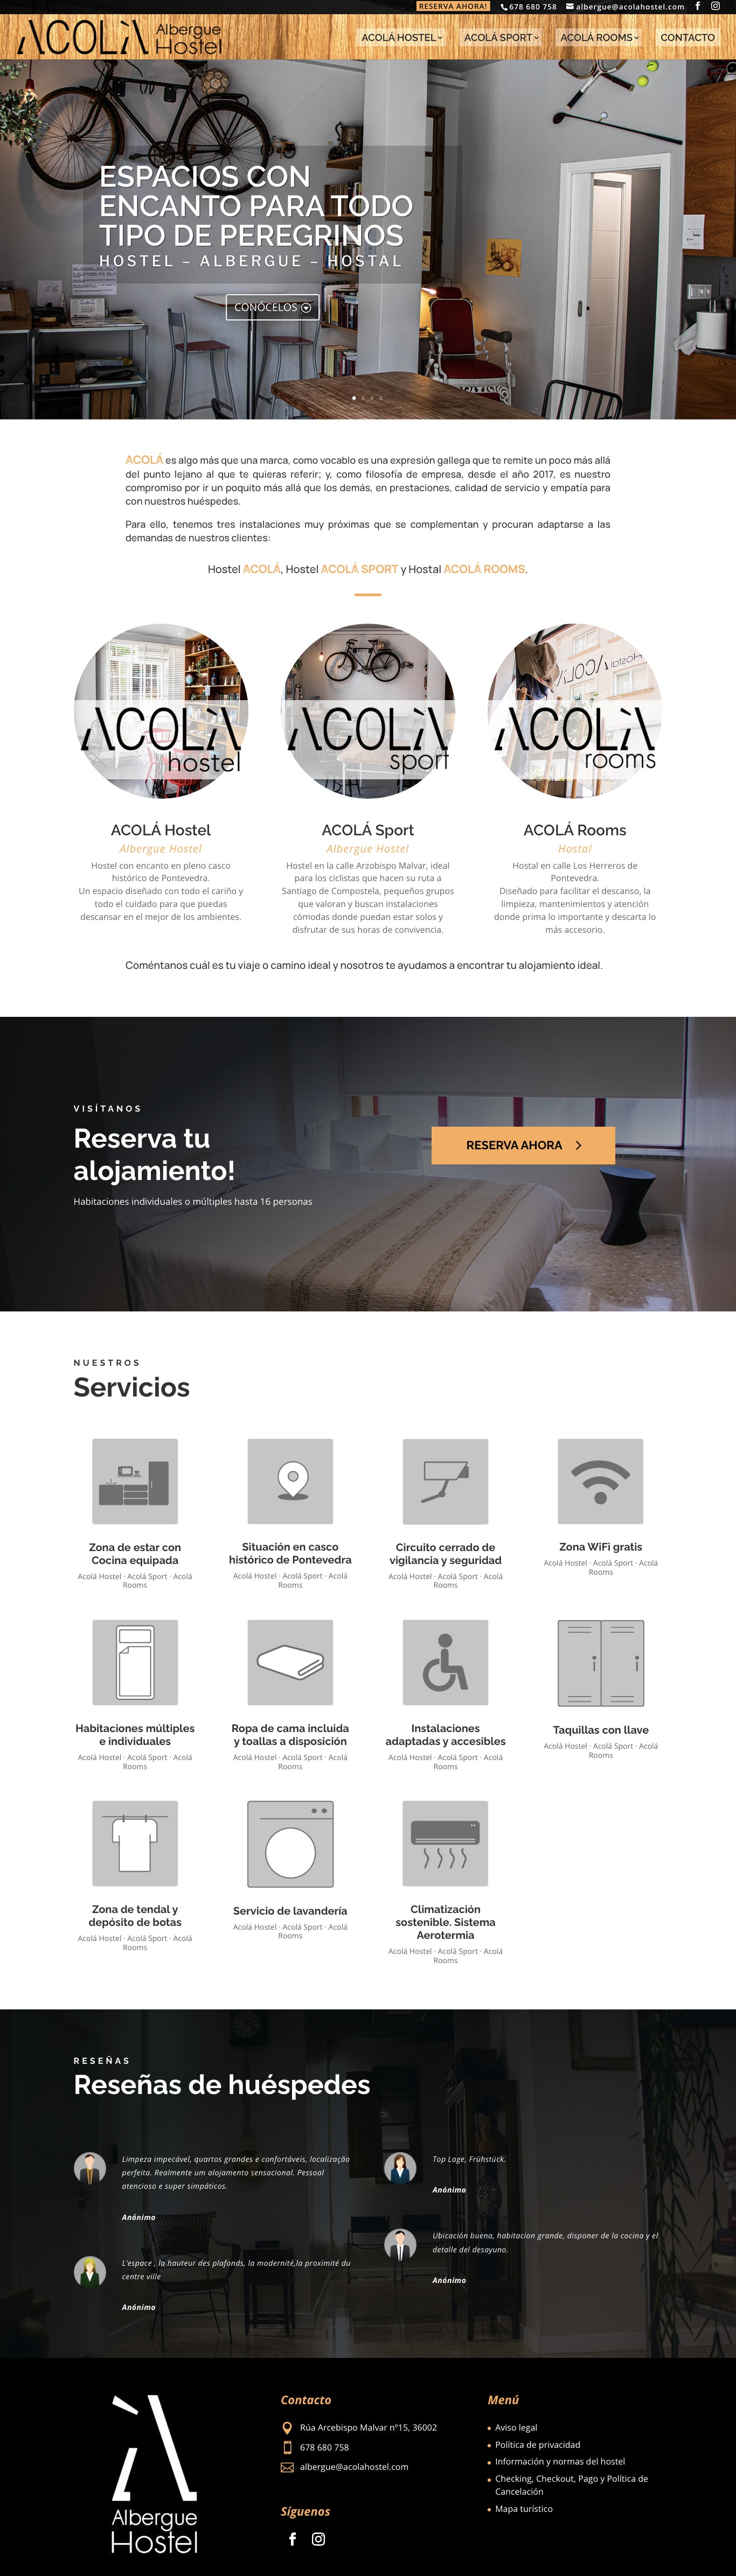 Captura web Acolá hostel realizada por Webloren 2.0 Soluciones Gráficas